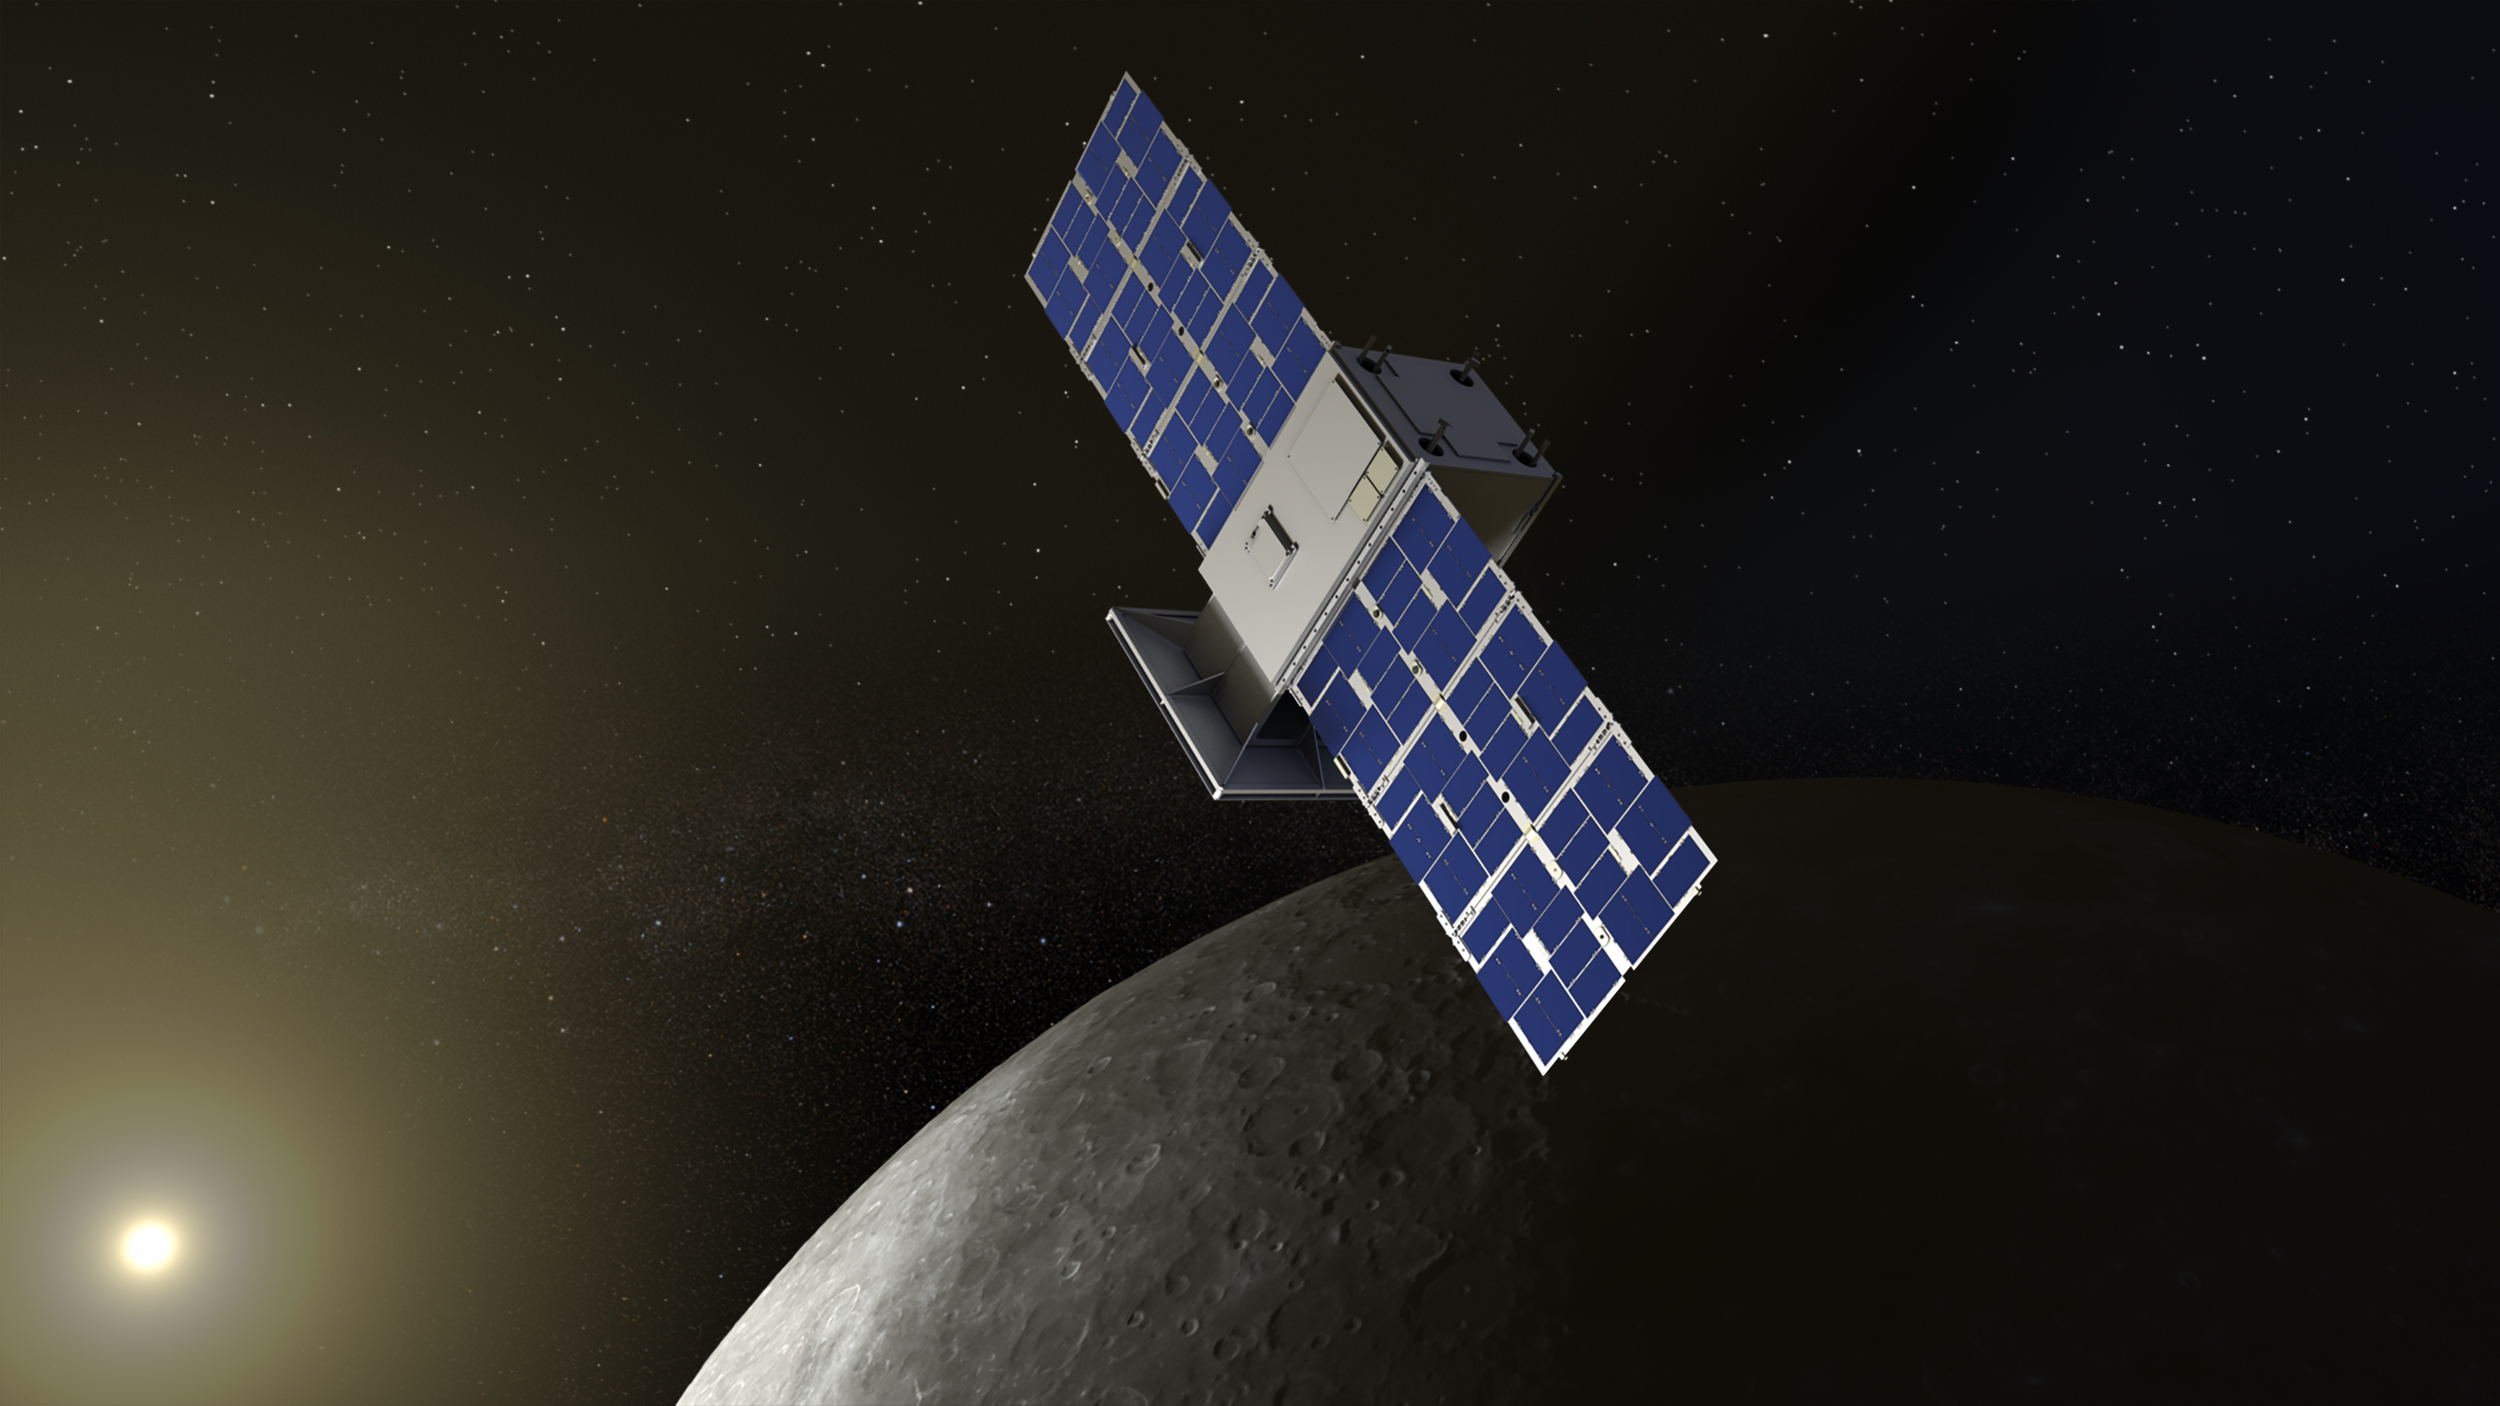 CAPSTONE prueba con éxito su sistema de GPS lunar